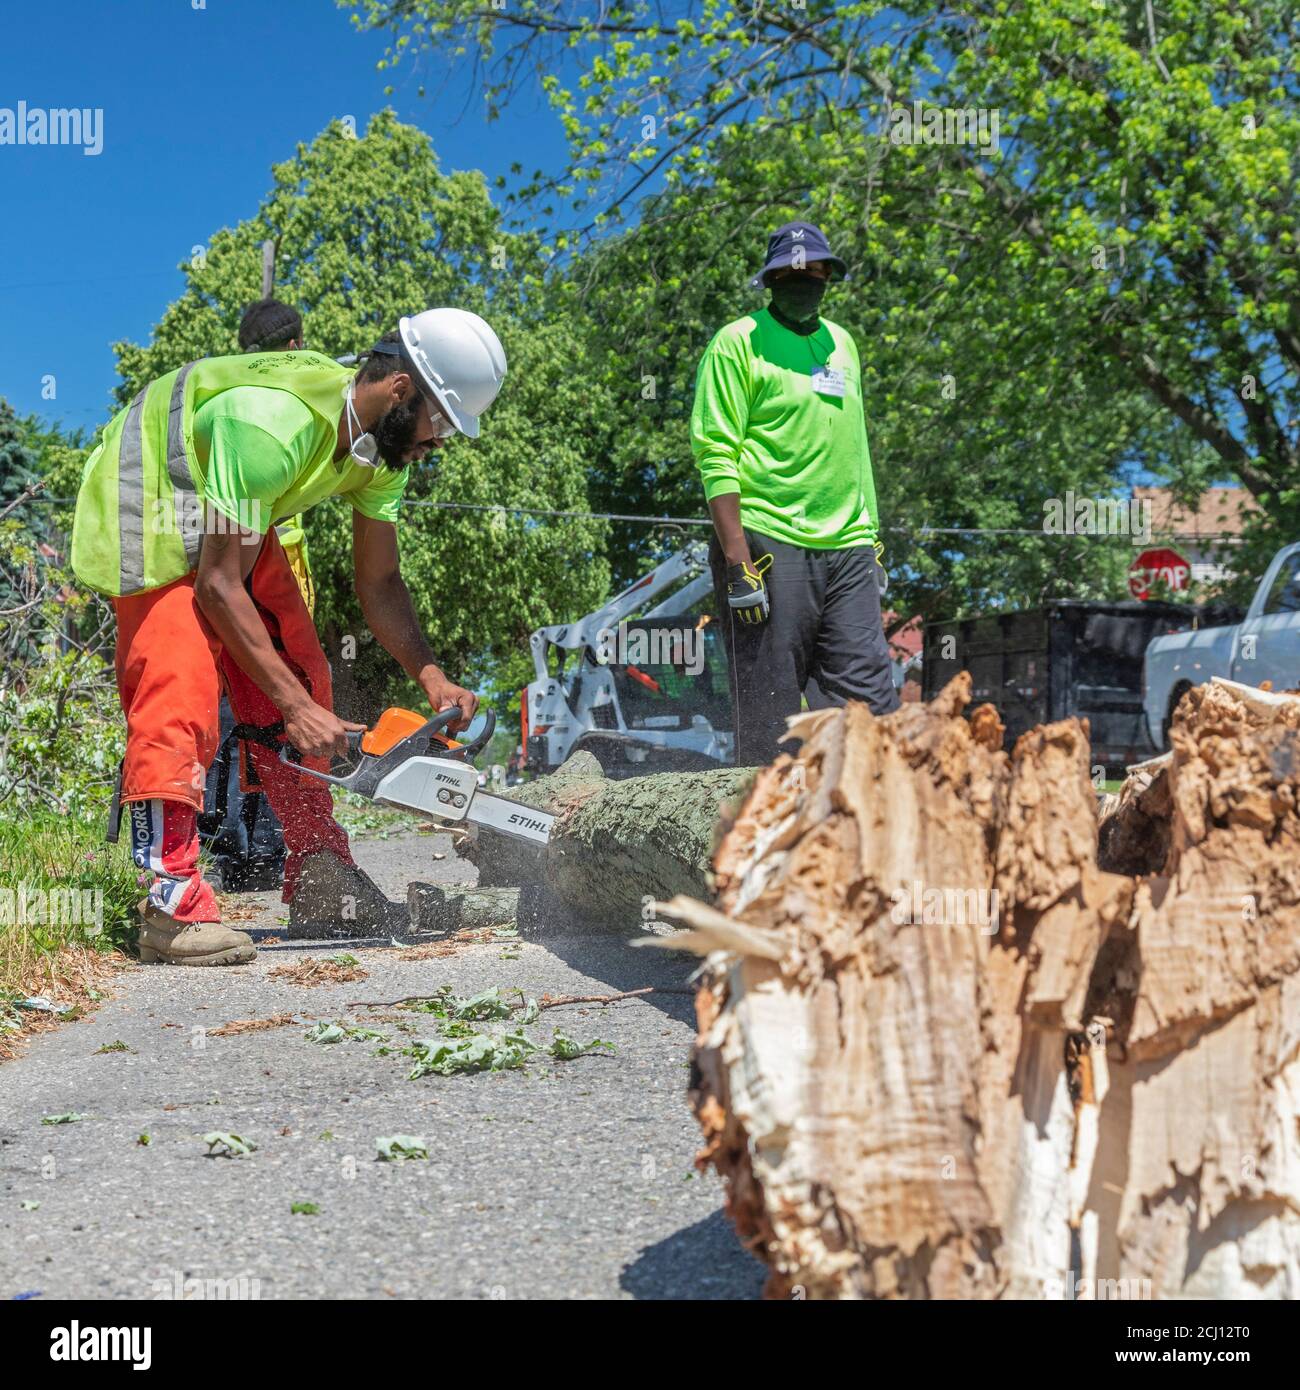 Detroit, Michigan - les employés de l'équipe de terrain de Motor City nettoient les dommages causés par les restes de la tempête tropicale Cristobal. La tempête a amené dow Banque D'Images